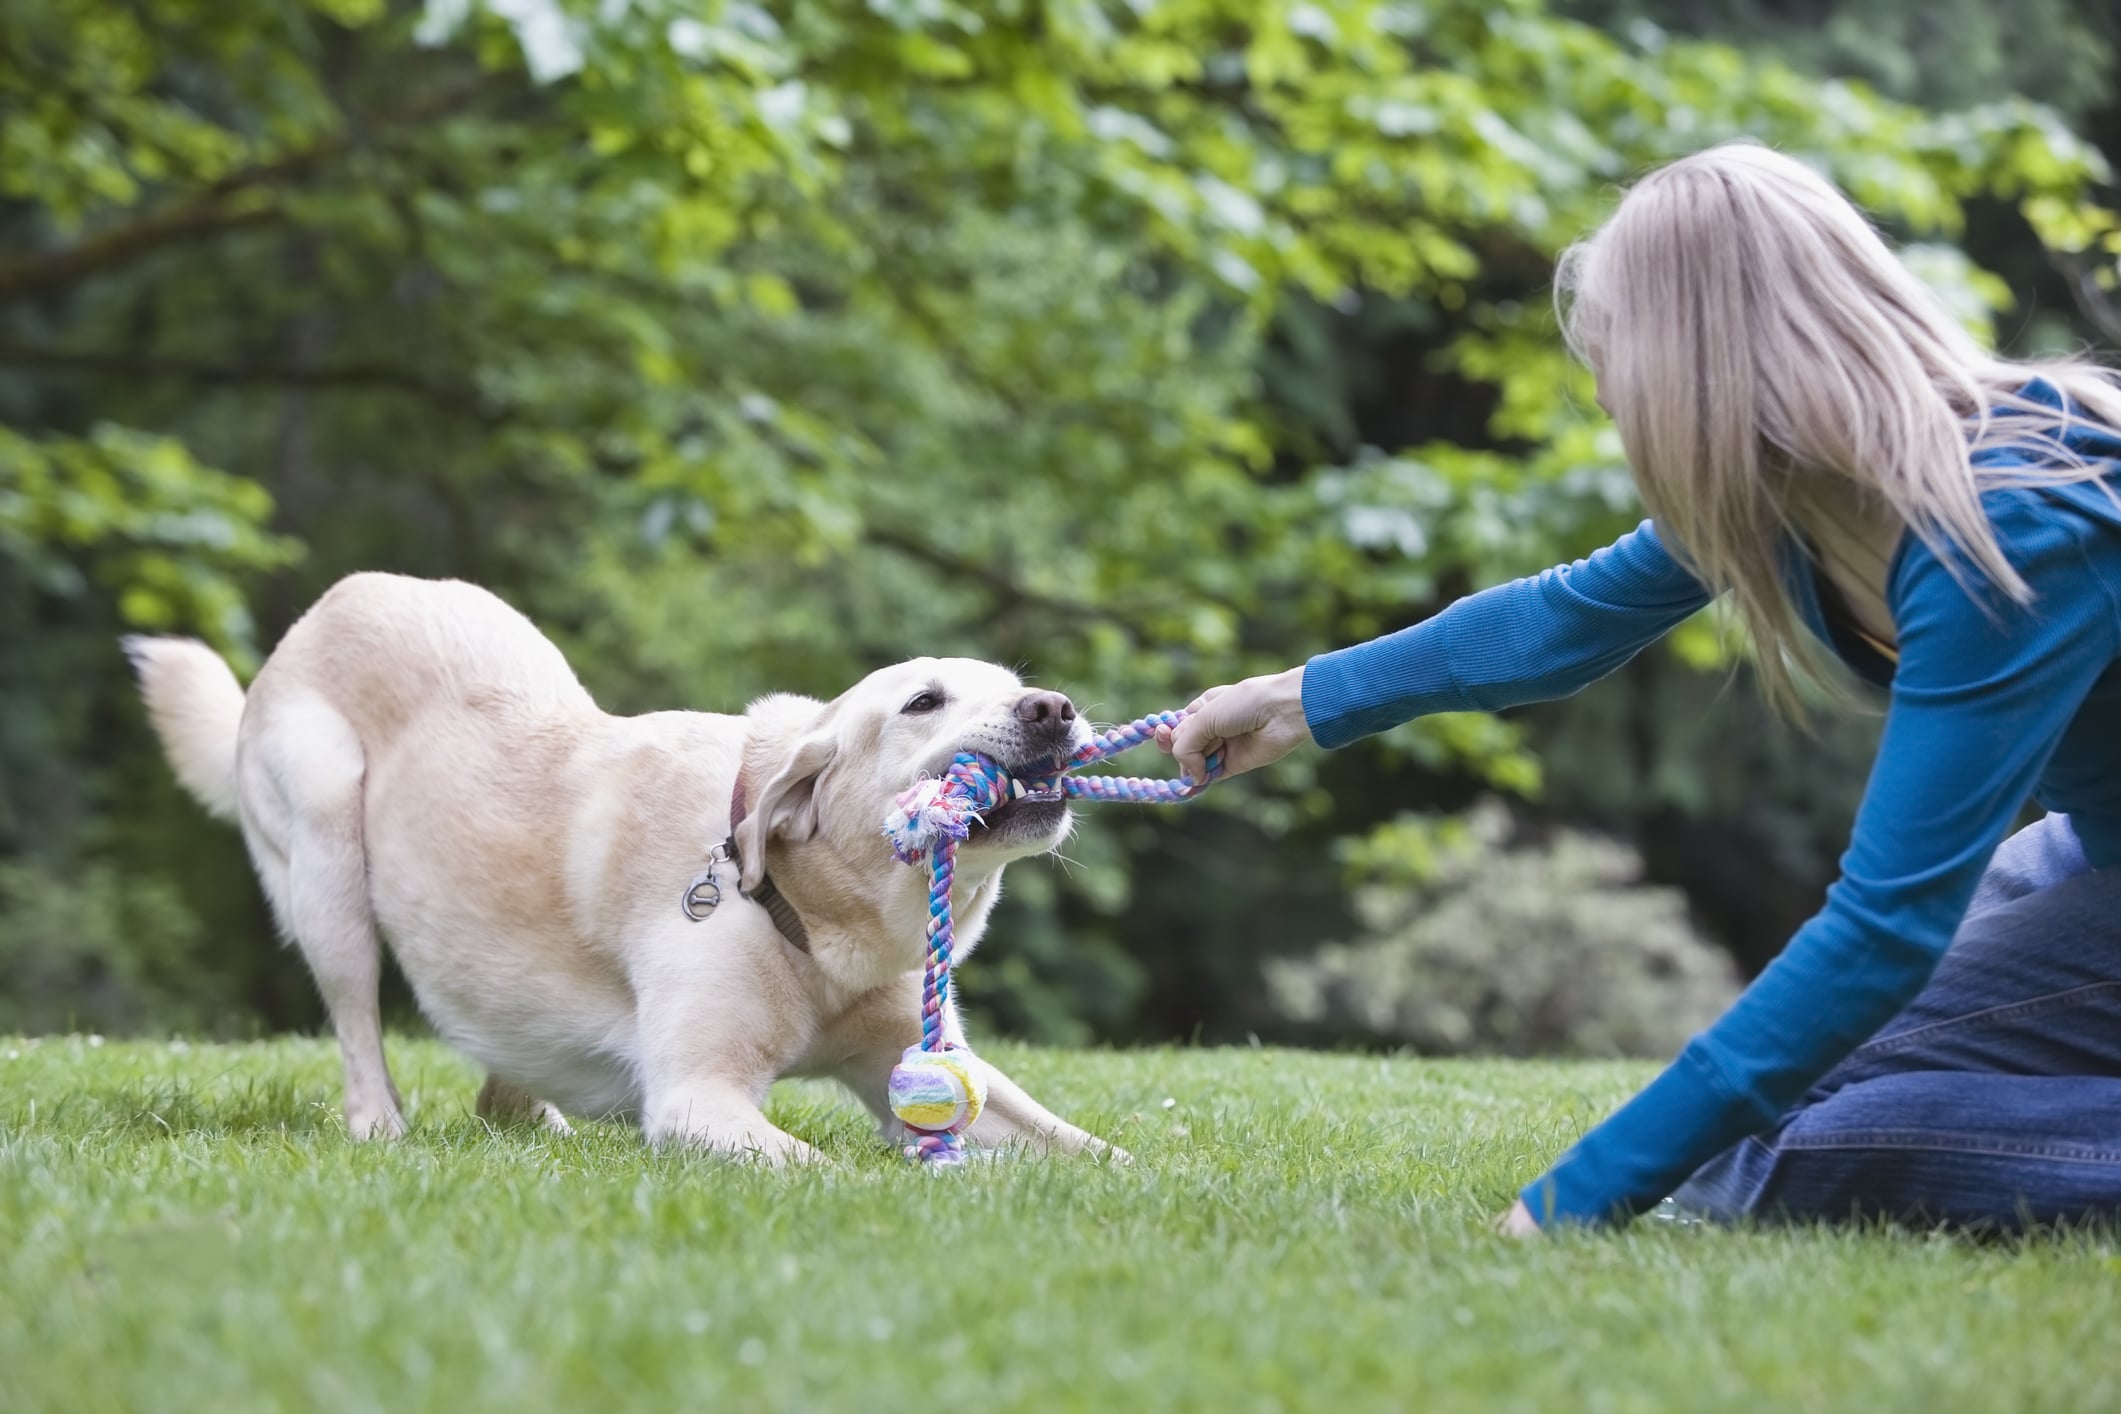 Girl playing tug-of-war with dog